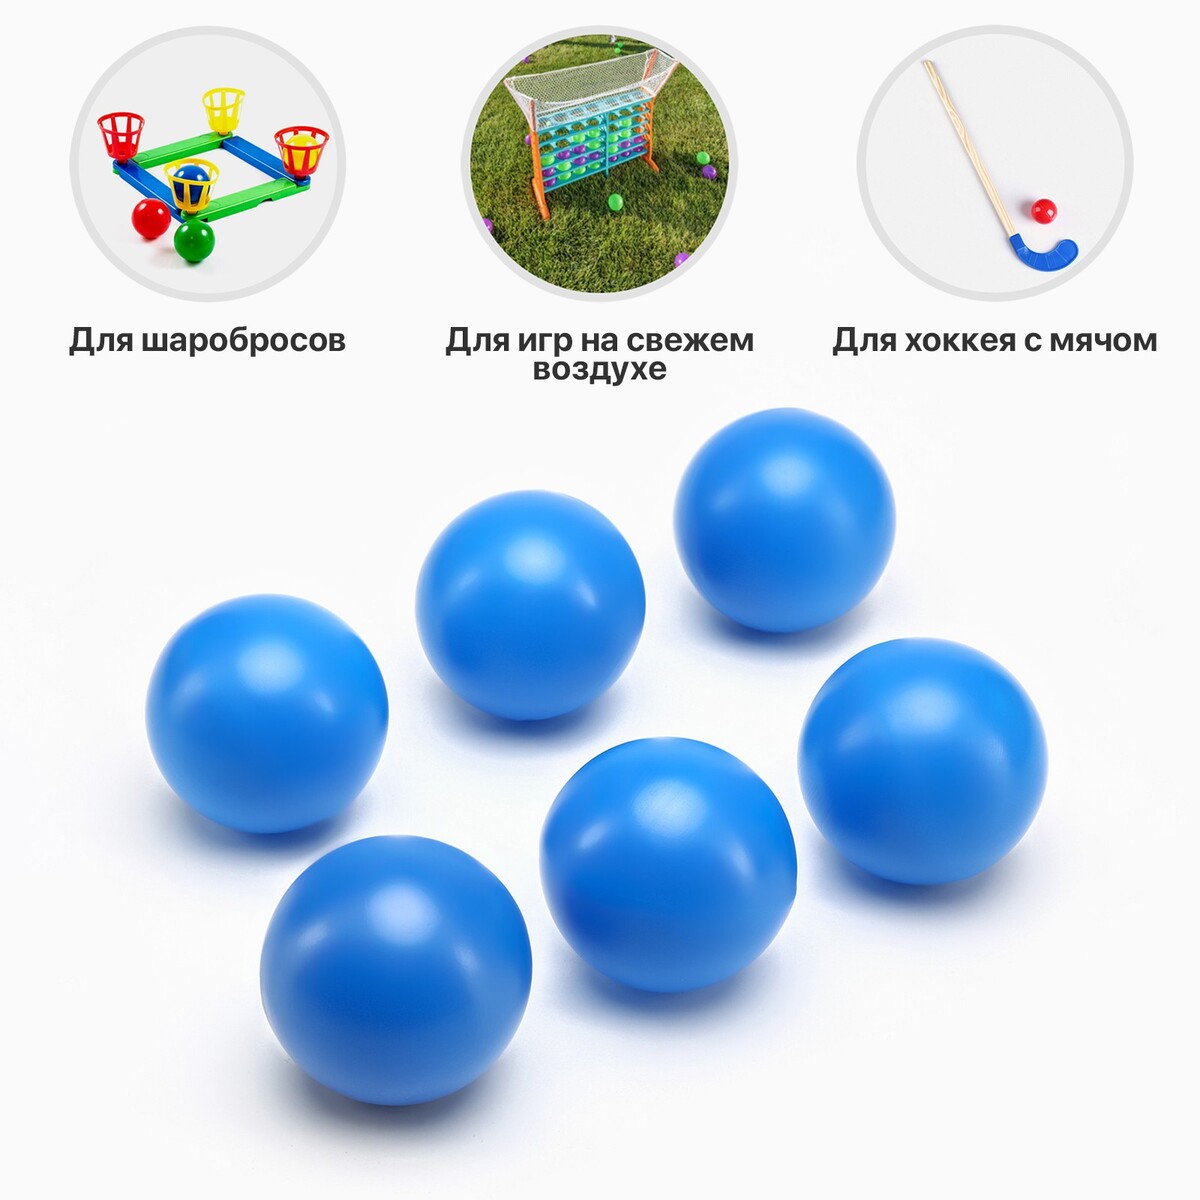 Набор мячей для садовых игр, хоккея, 6 шт, d-7 см набор мячей для настольного тенниса onlytop d 40 мм 12 шт оранжевый